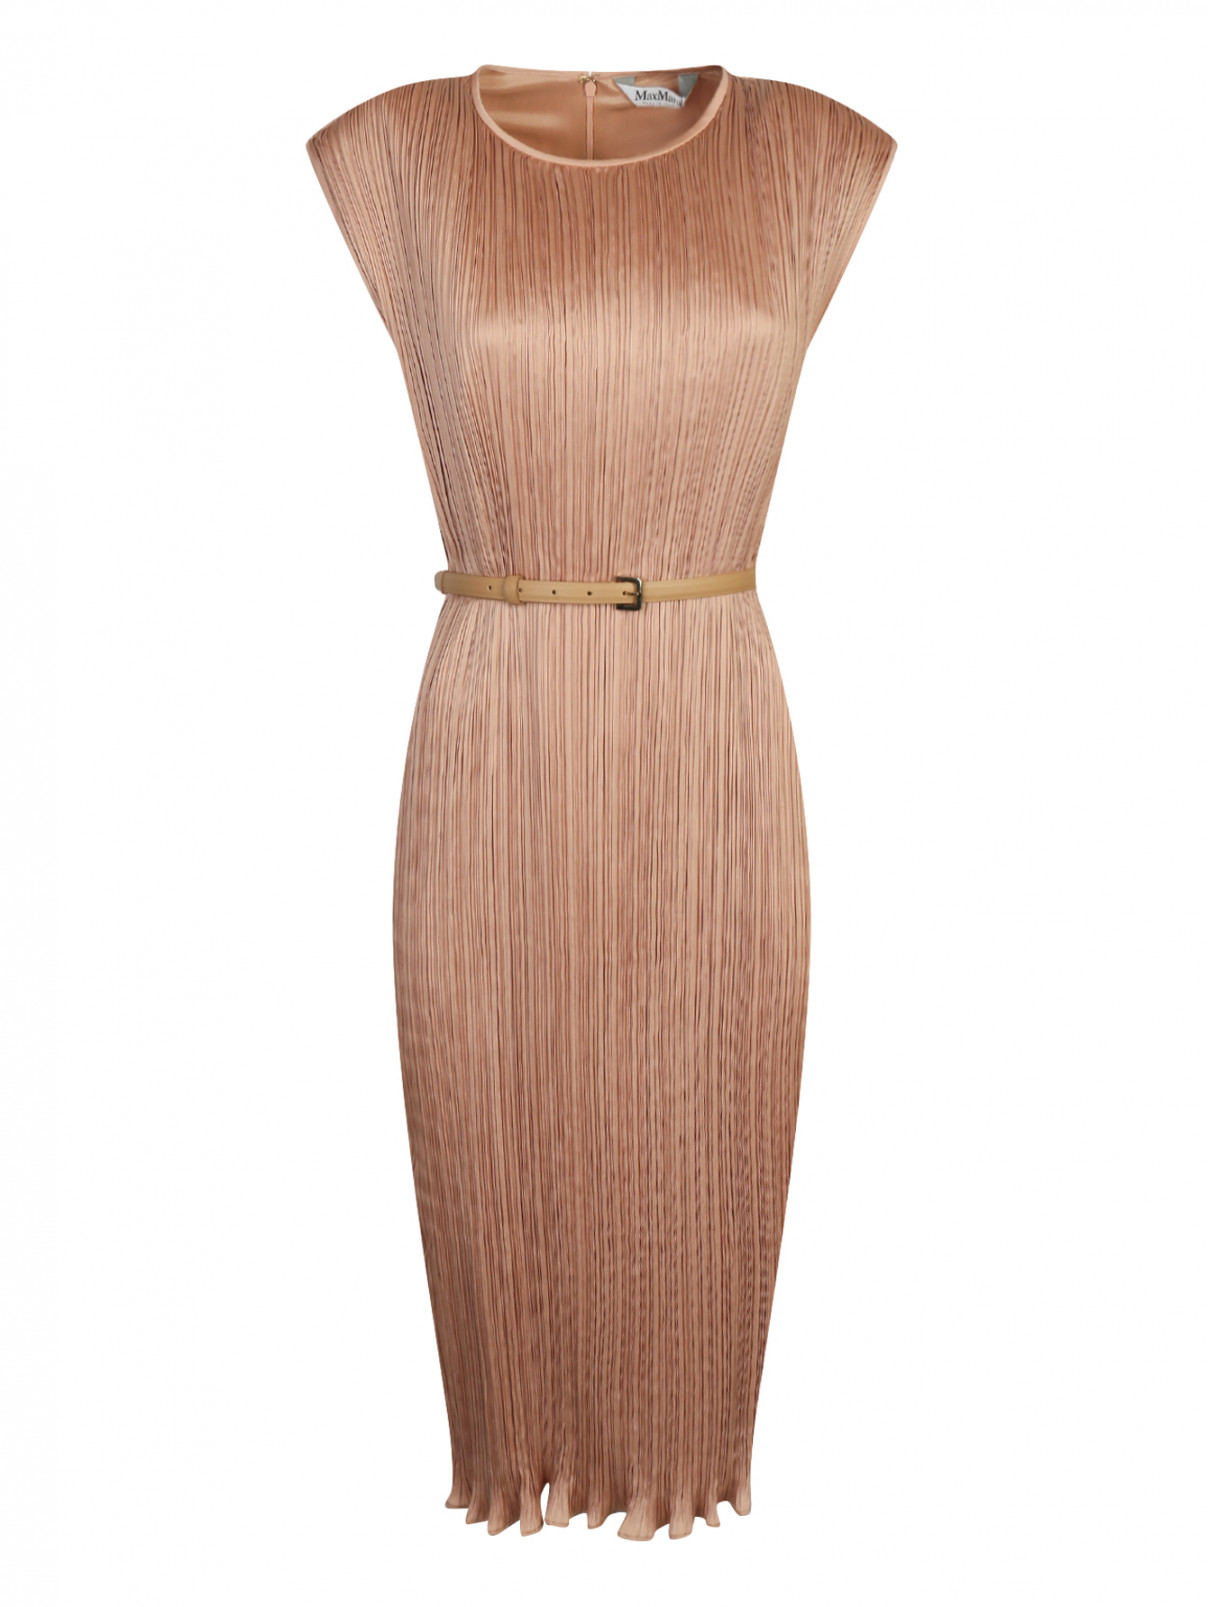 Плиссированное платье с поясом Max Mara  –  Общий вид  – Цвет:  Коричневый